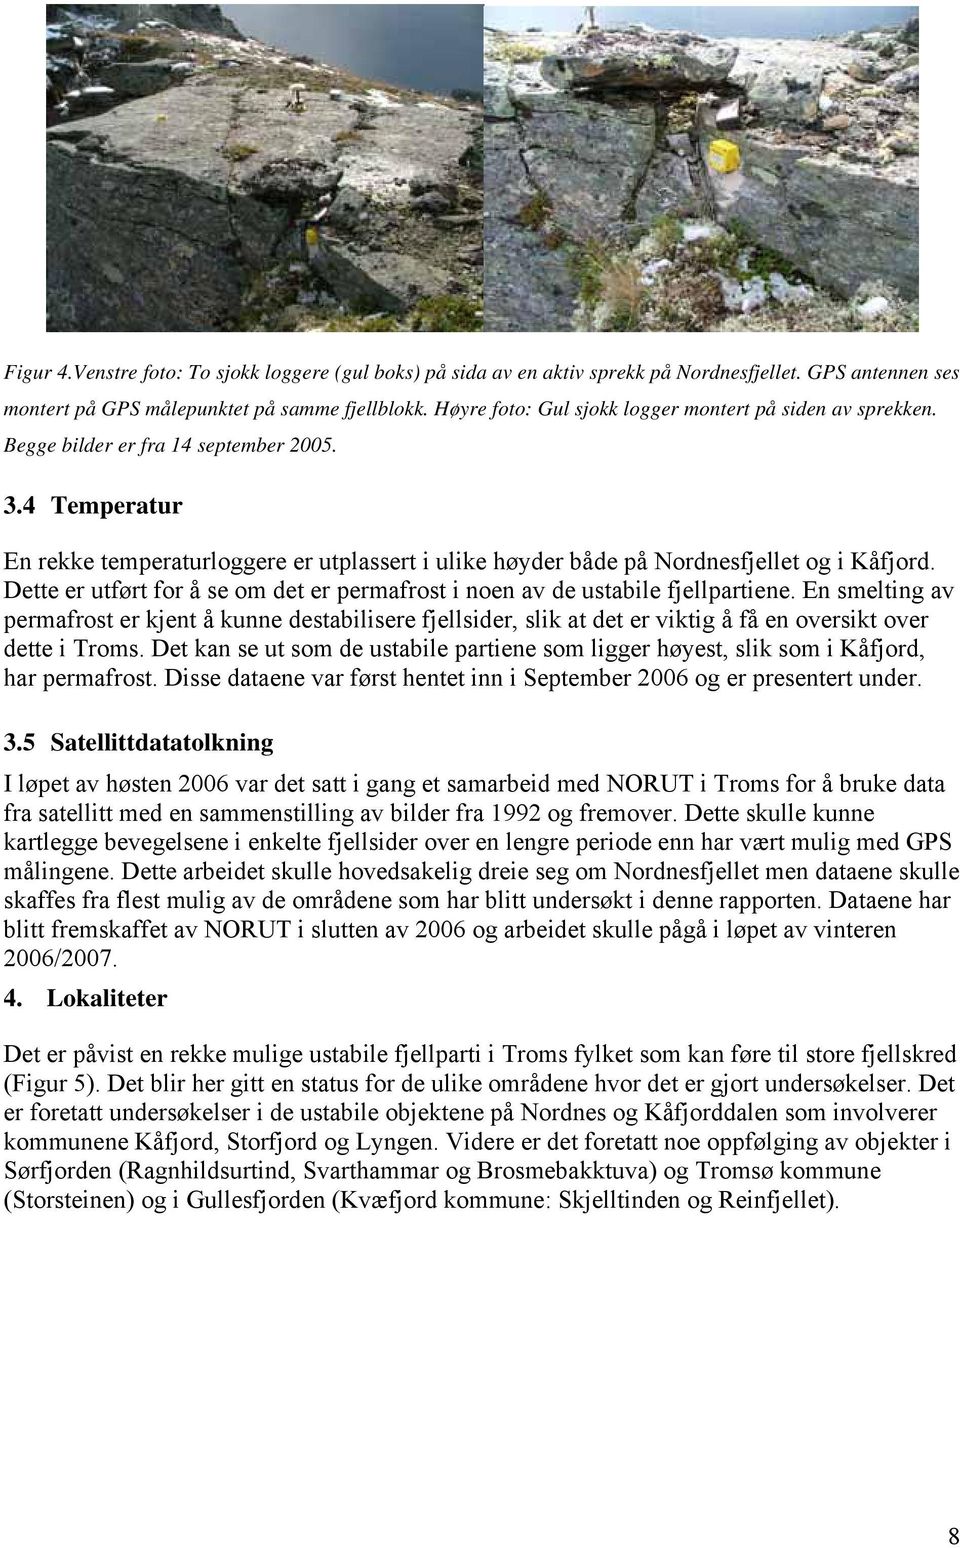 4 Temperatur En rekke temperaturloggere er utplassert i ulike høyder både på Nordnesfjellet og i Kåfjord. Dette er utført for å se om det er permafrost i noen av de ustabile fjellpartiene.